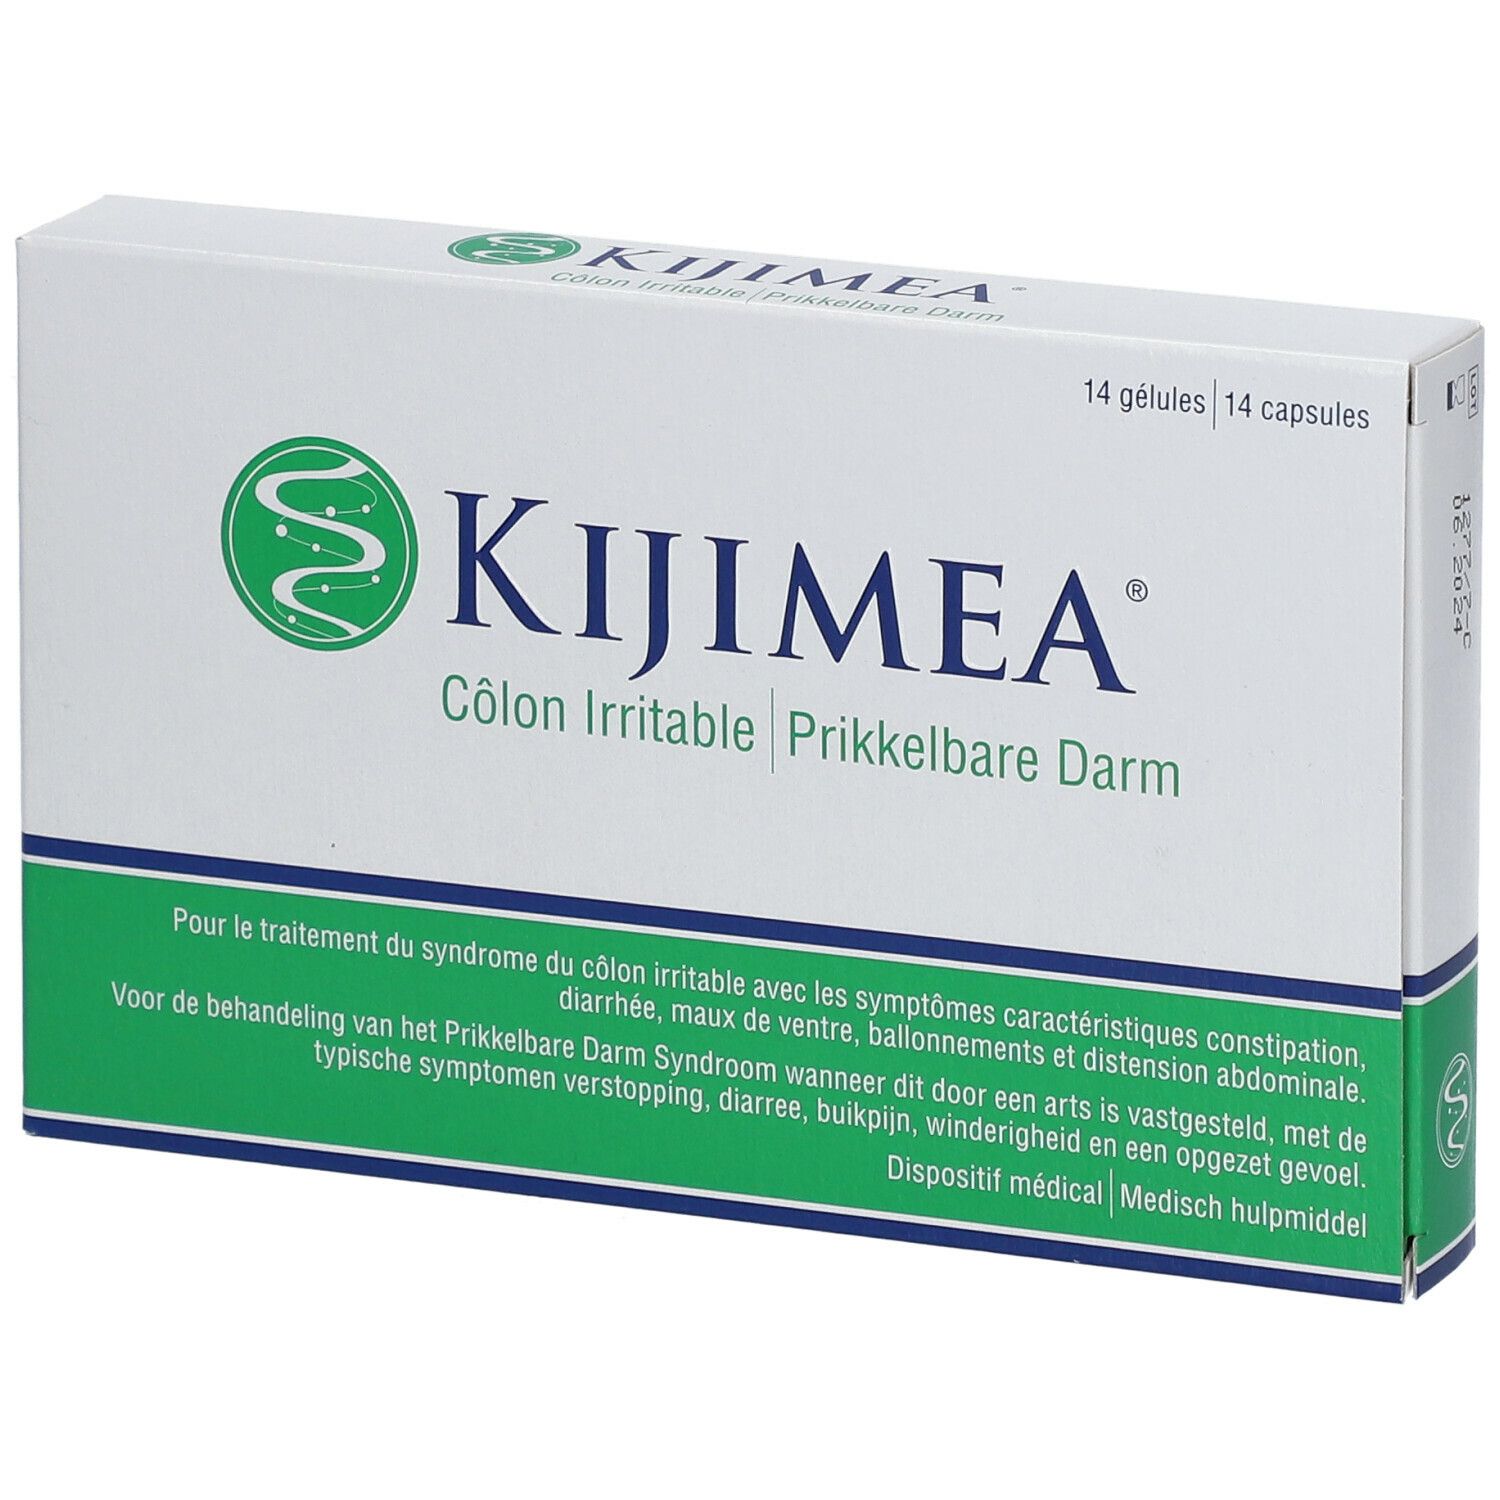 Kijimea® Côlon irritable